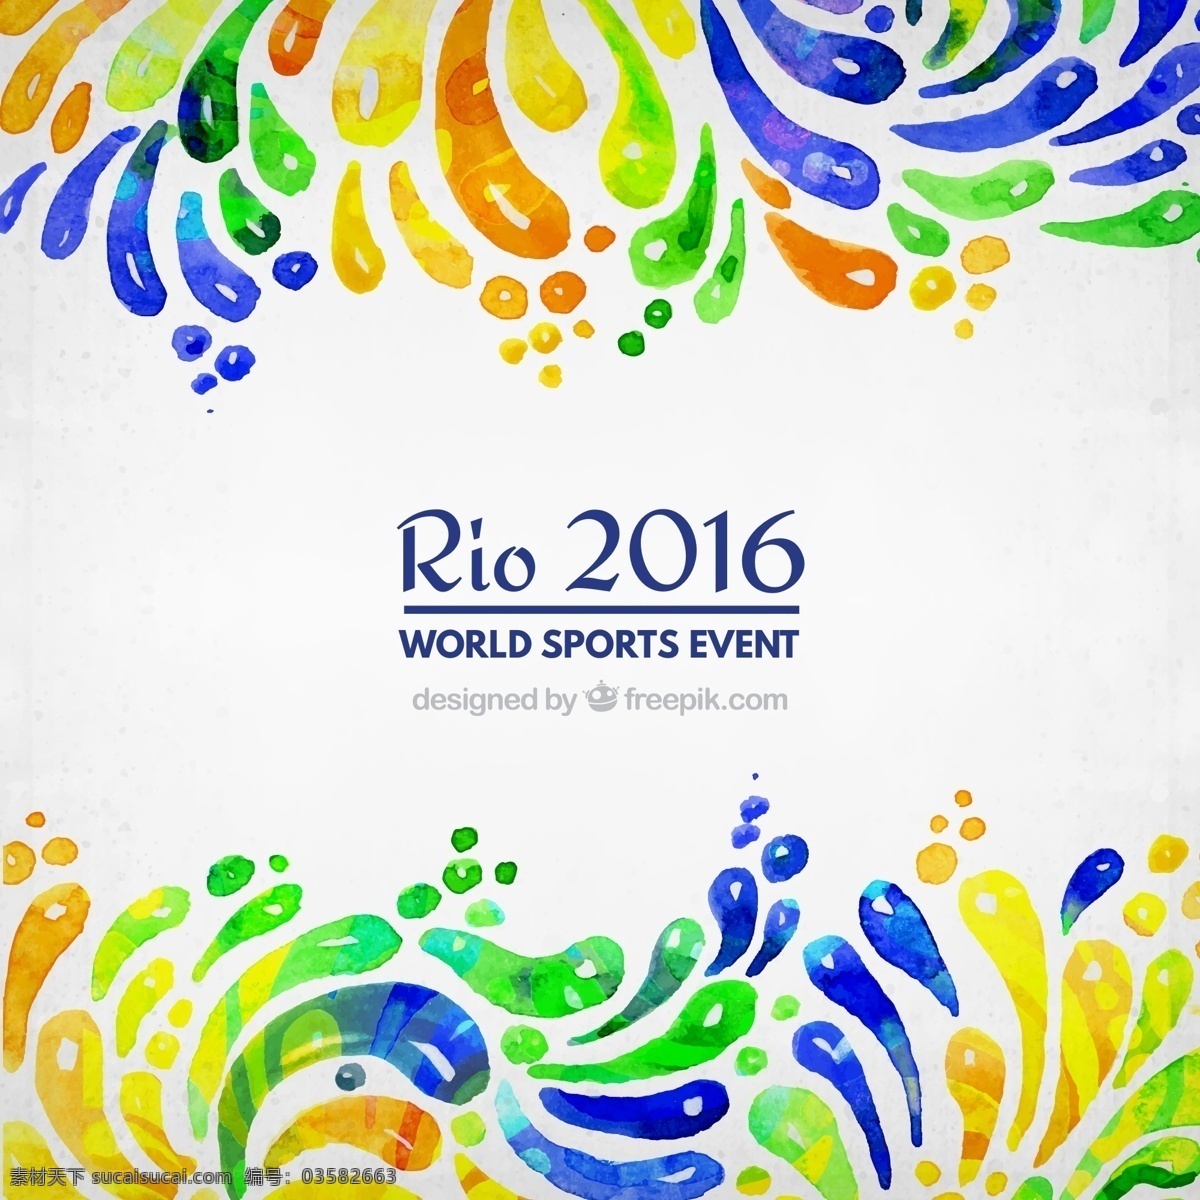 水彩 风格 2016 巴西 奥运会 背景 里约 运动会 水墨 手绘 贺卡 彩色 抽象背景 里约奥运会 矢量图 比赛 运动健康 运动项目 体育健身 健康 运动 训练游戏 巴西背景 rio里约